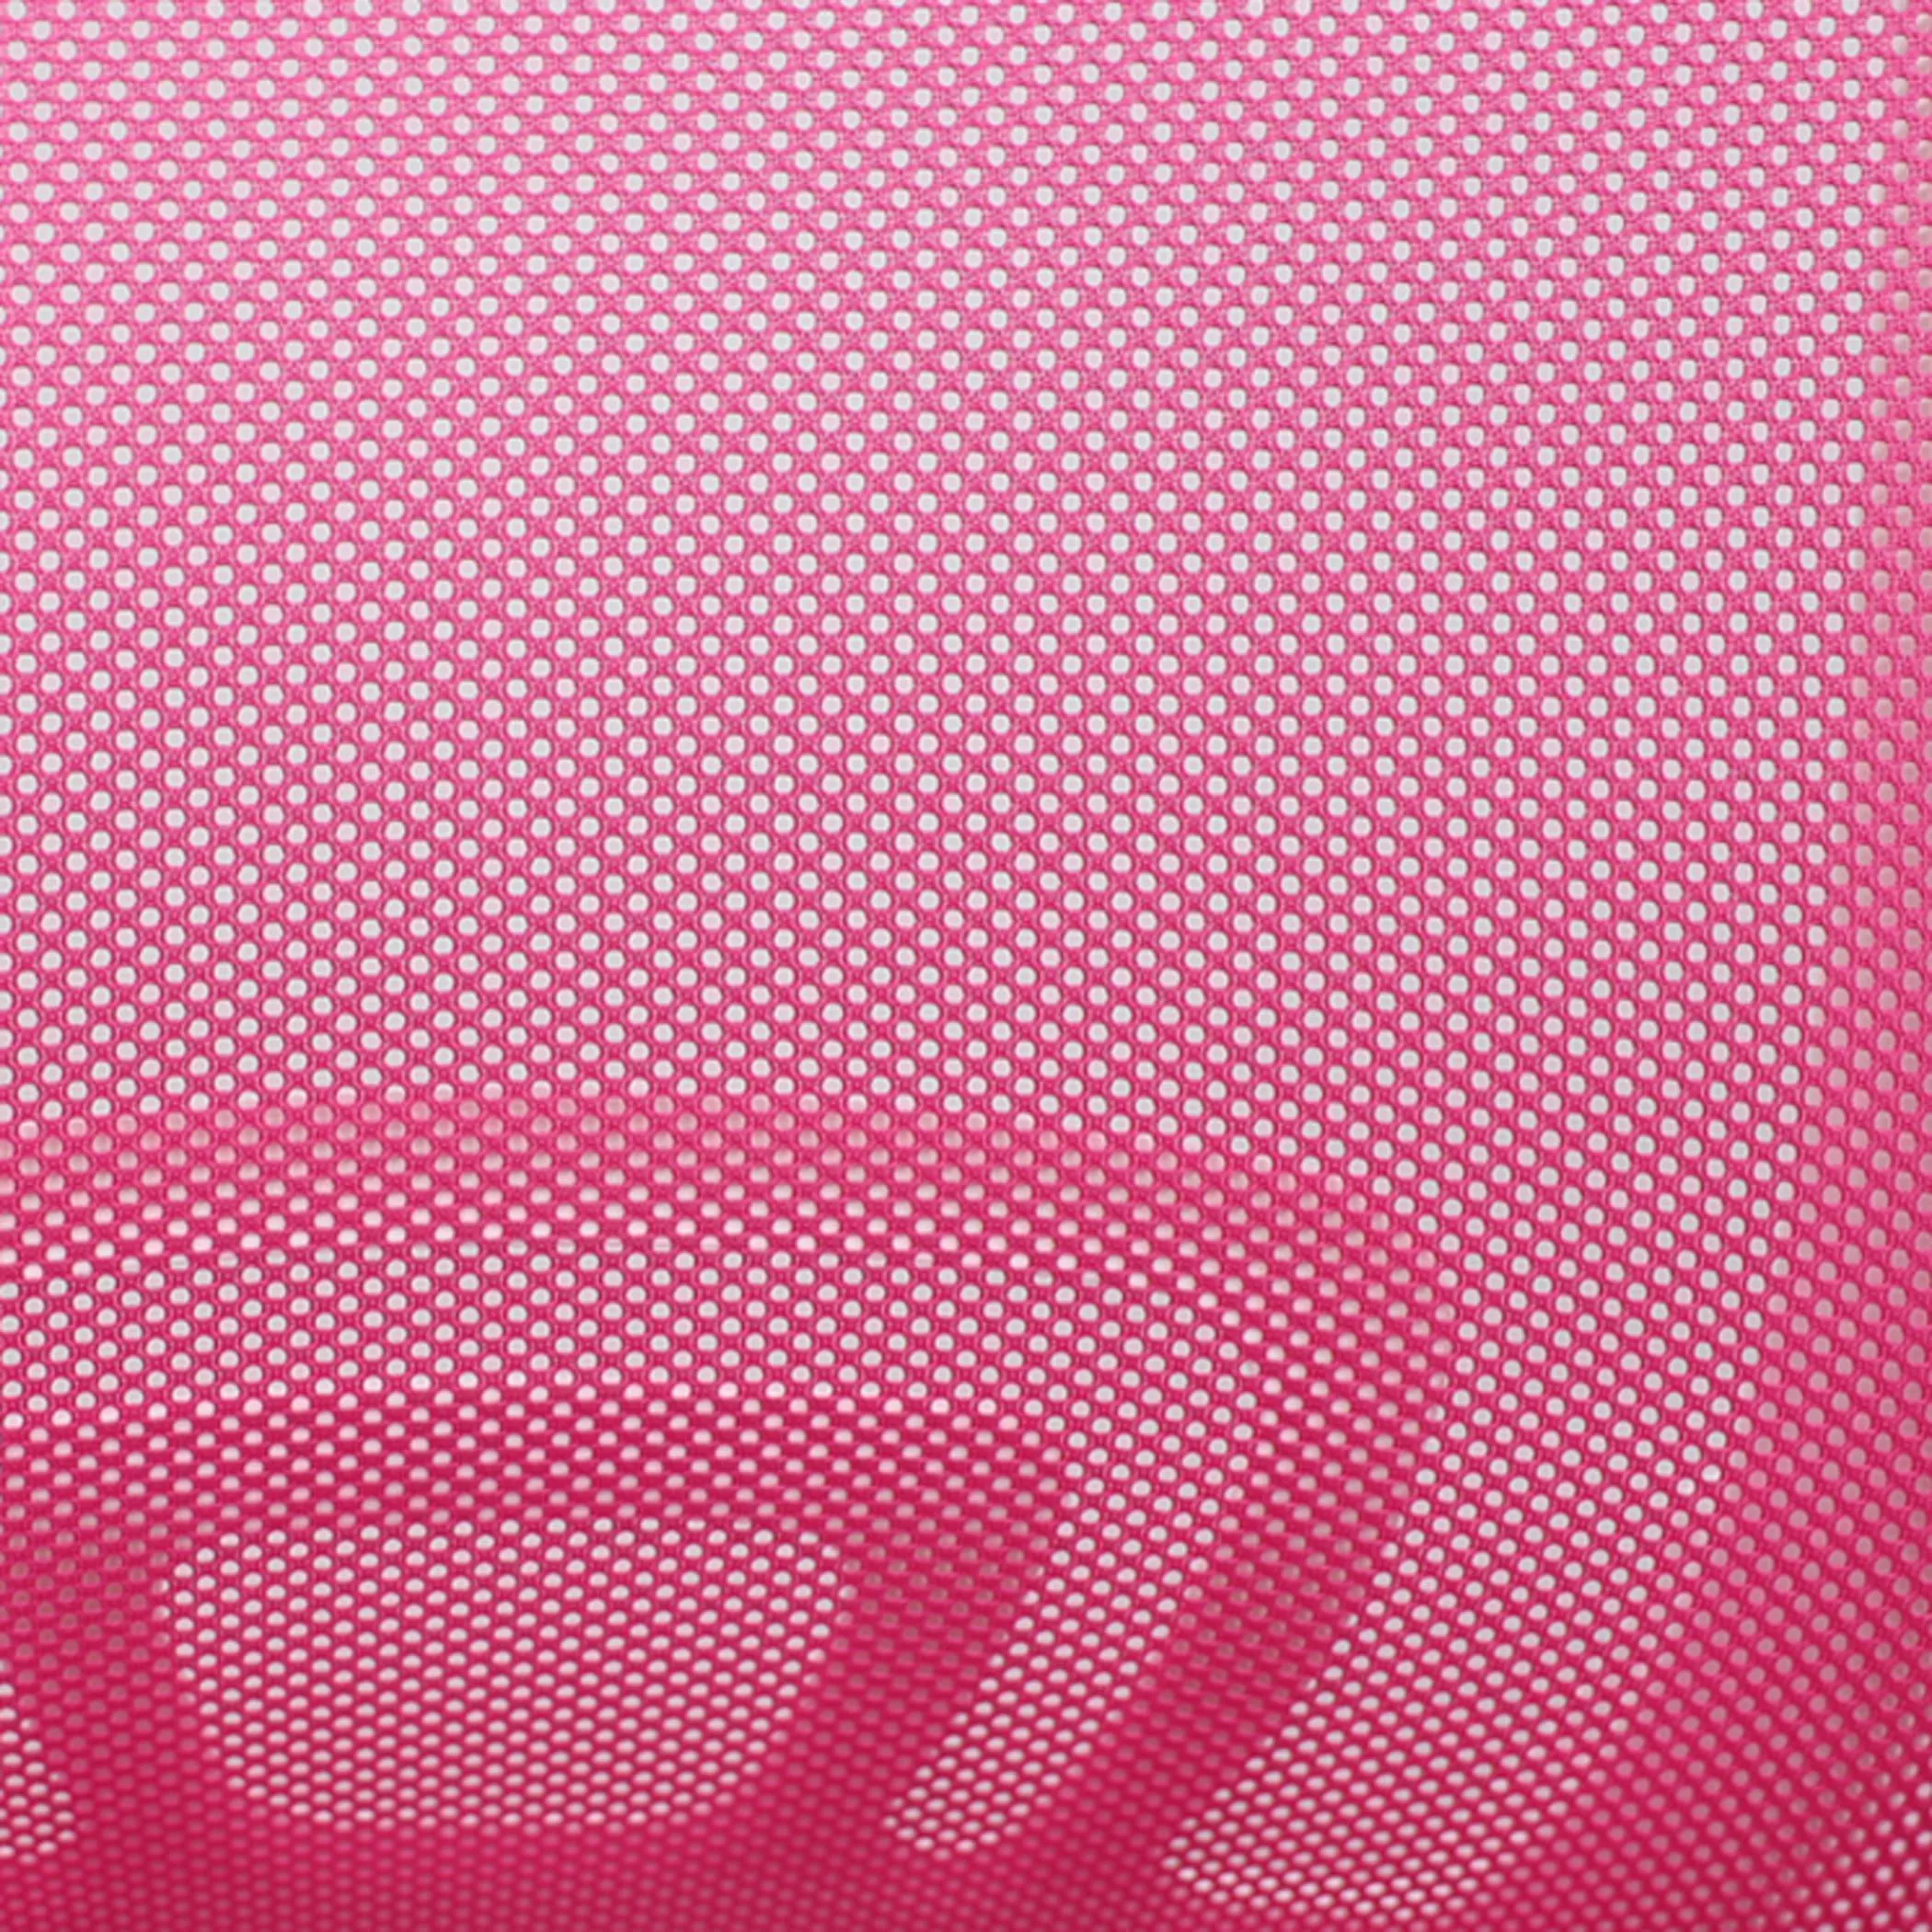 Кресло поворотное Ricci розовый 74986